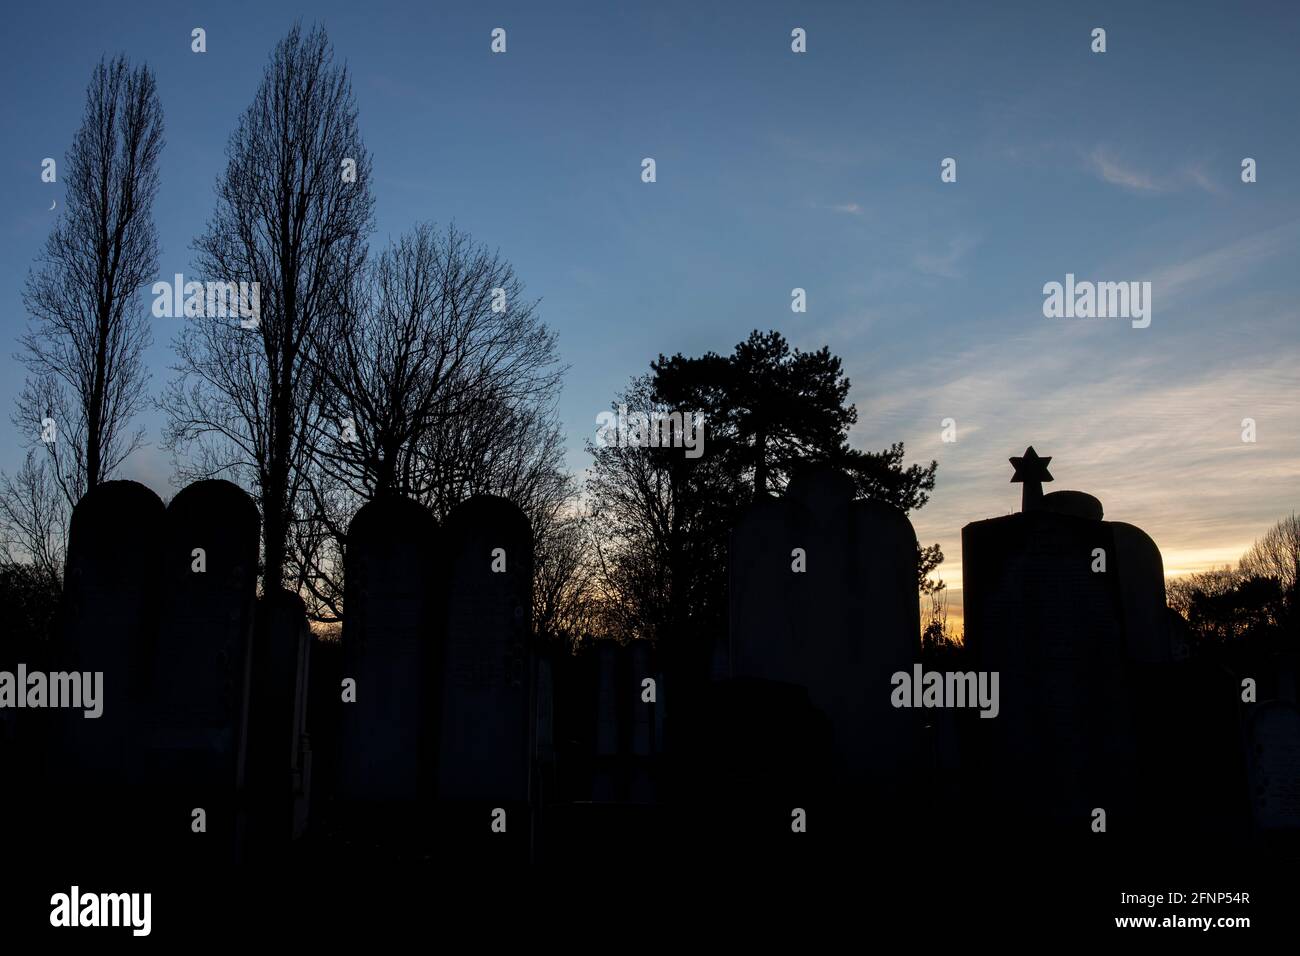 City of Paris cemetery, Bagneux, Hauts-de-Seine, France. Jewish graves Stock Photo